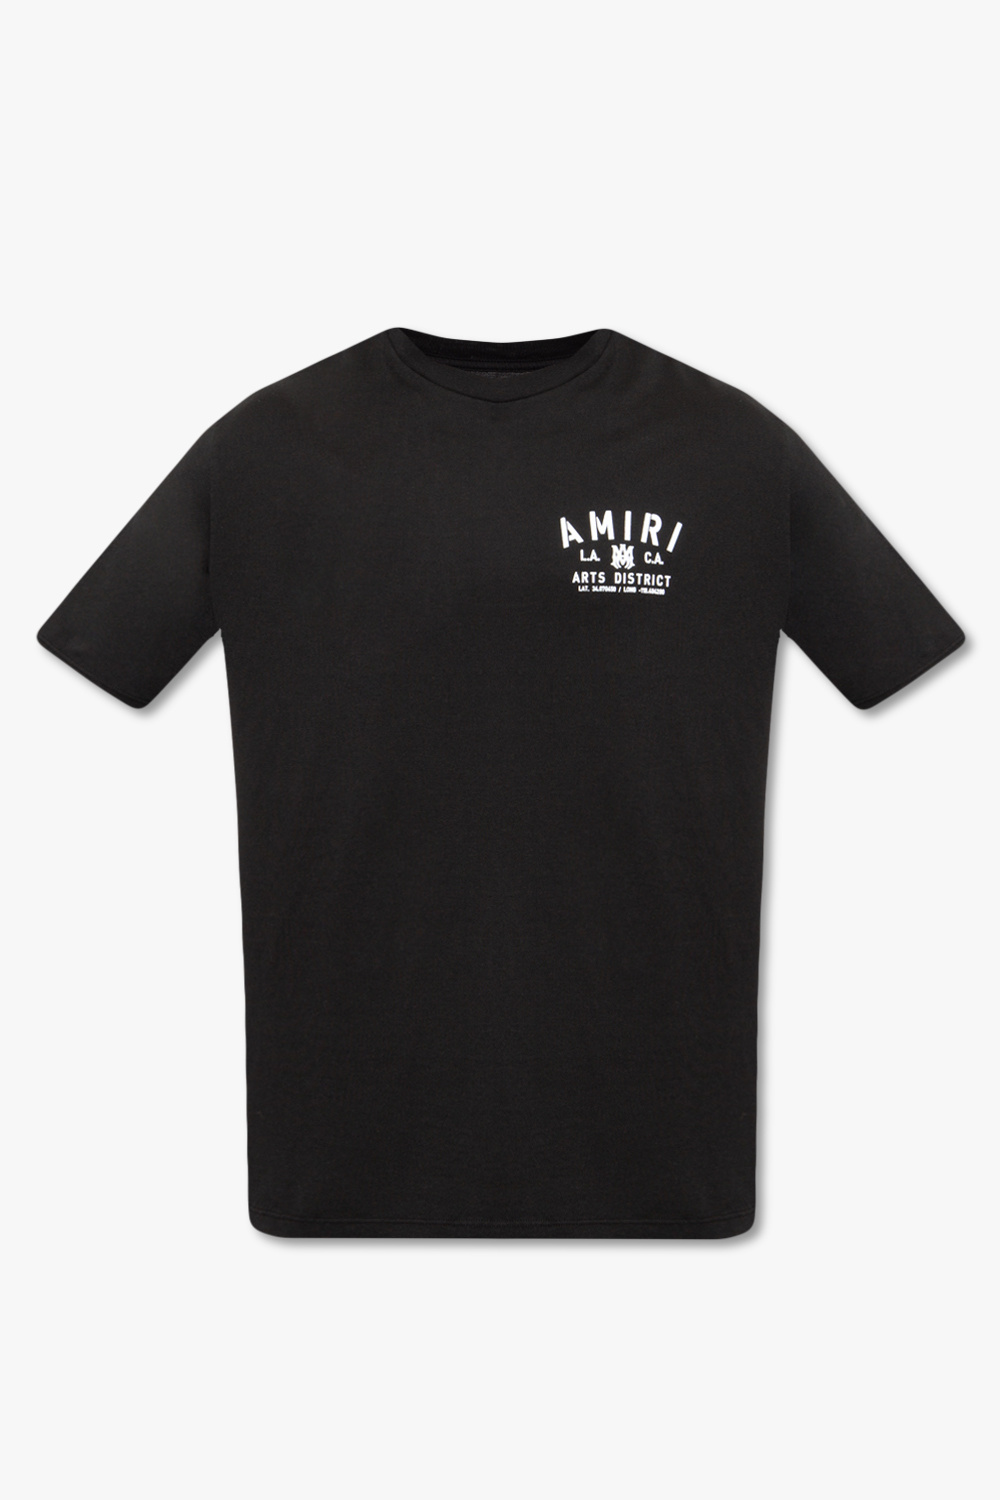 Amiri Logo T-shirt | Men's Clothing | Vitkac